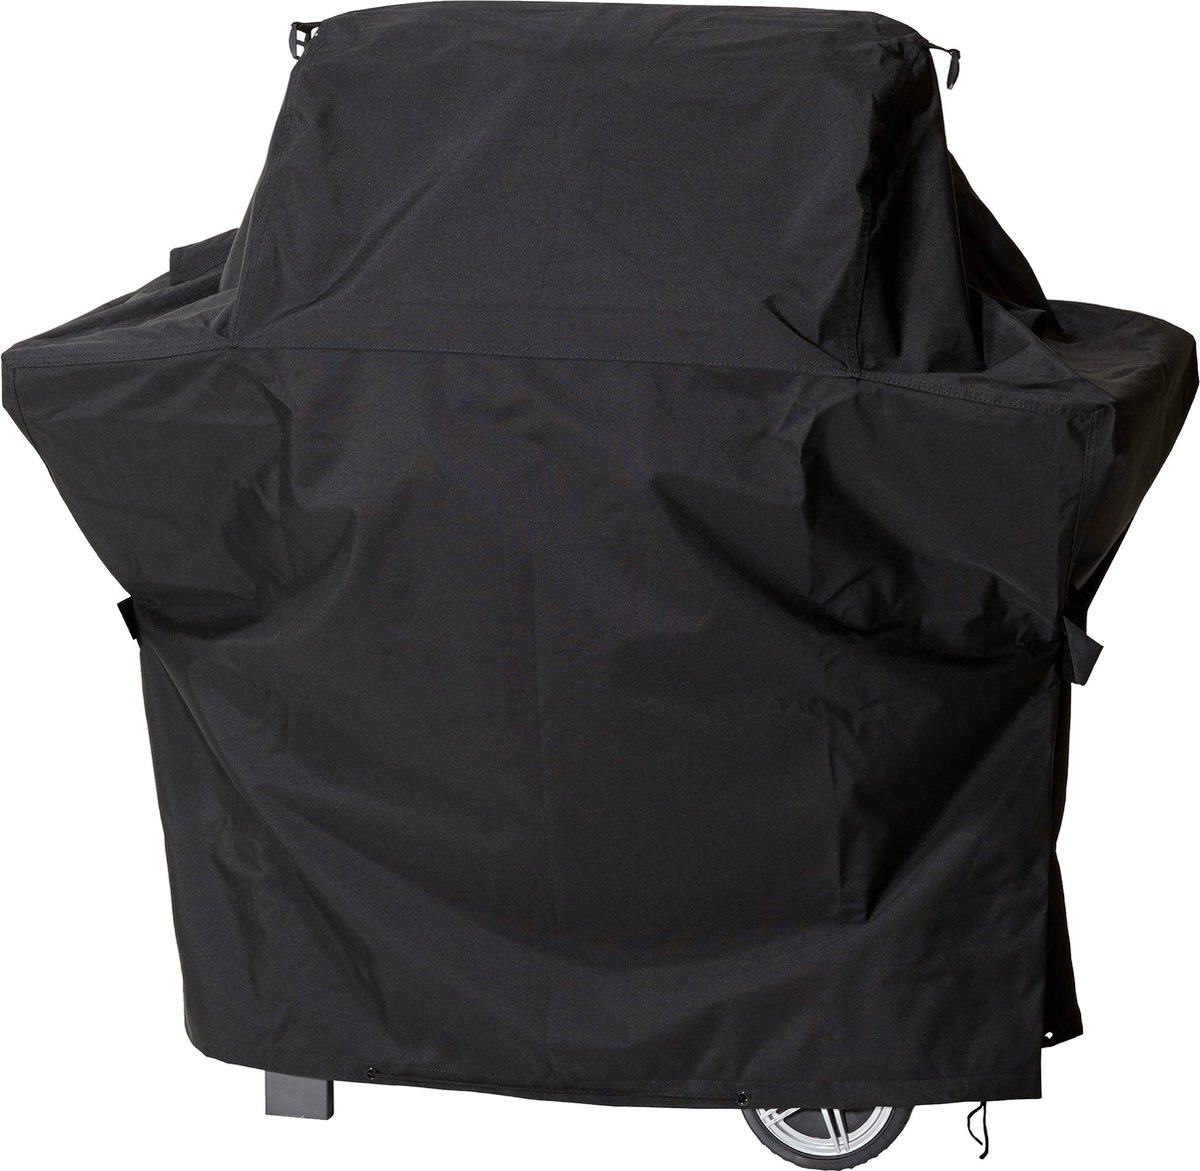 Beschermhoes voor gasbarbecue trapeziumvormig |152 x 62 x 117 cm | polyesterweefsel van het type Oxford 600D, kleur: zwart.